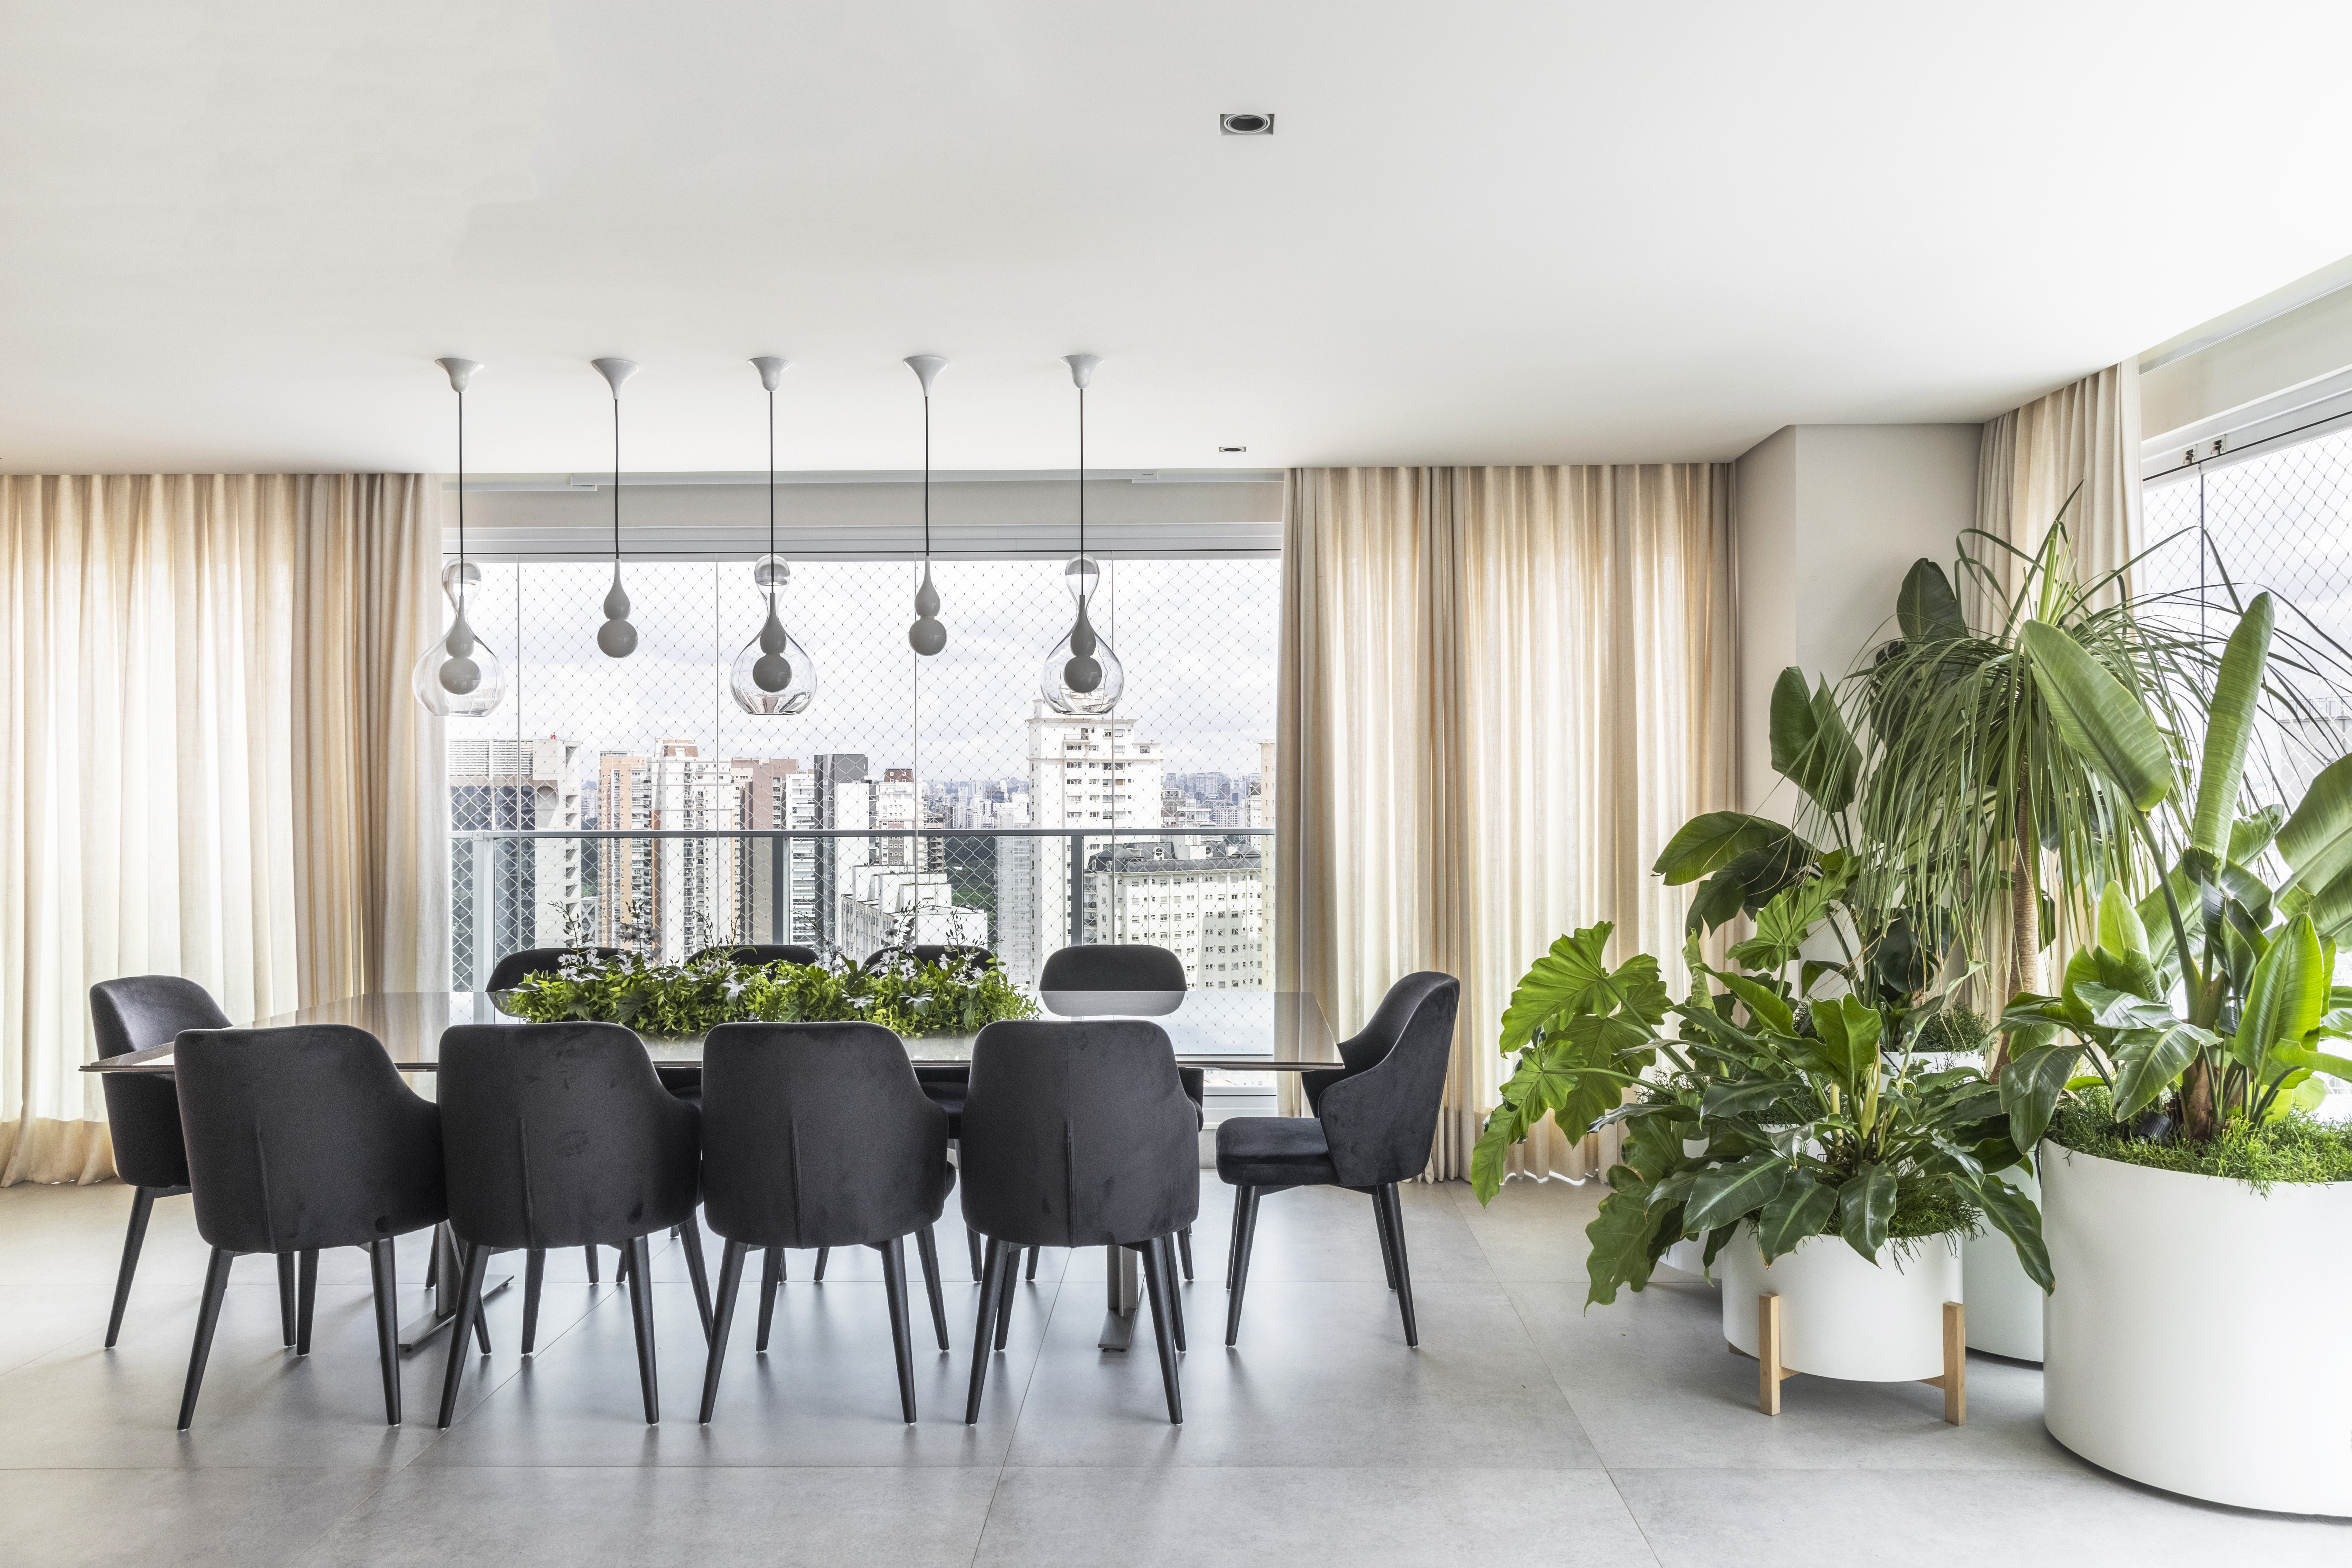 Contemporâneo e atemporal: apê tem varanda integrada e tons neutros. Projeto de BZP Arquitetura. Na foto, sala de jantar com cadeiras pretas estofadas e plantas na mesa e no canto da sala.